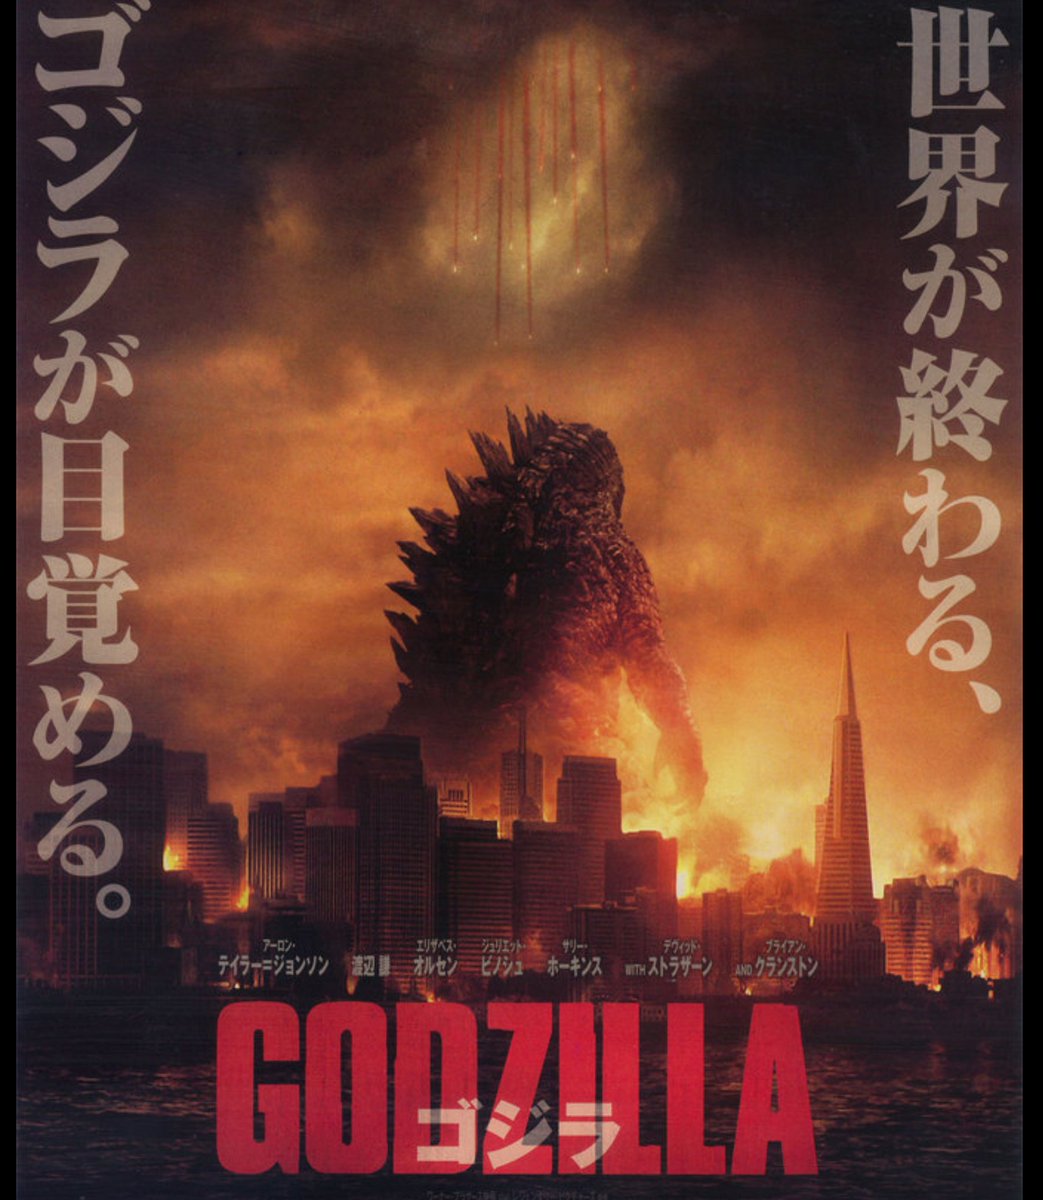 6月20日、土曜プレミアム(21:00~23:10)にて「GODZILLA 
ゴジラ」(2014年)が放送されます!

この映画を見たことないけど興味はあるなーという方に

『3コマで分かる「GODZILLA ゴジラ」』!!

※3コマゆえウルトラ雑です
#ゴジラ #Godzilla 